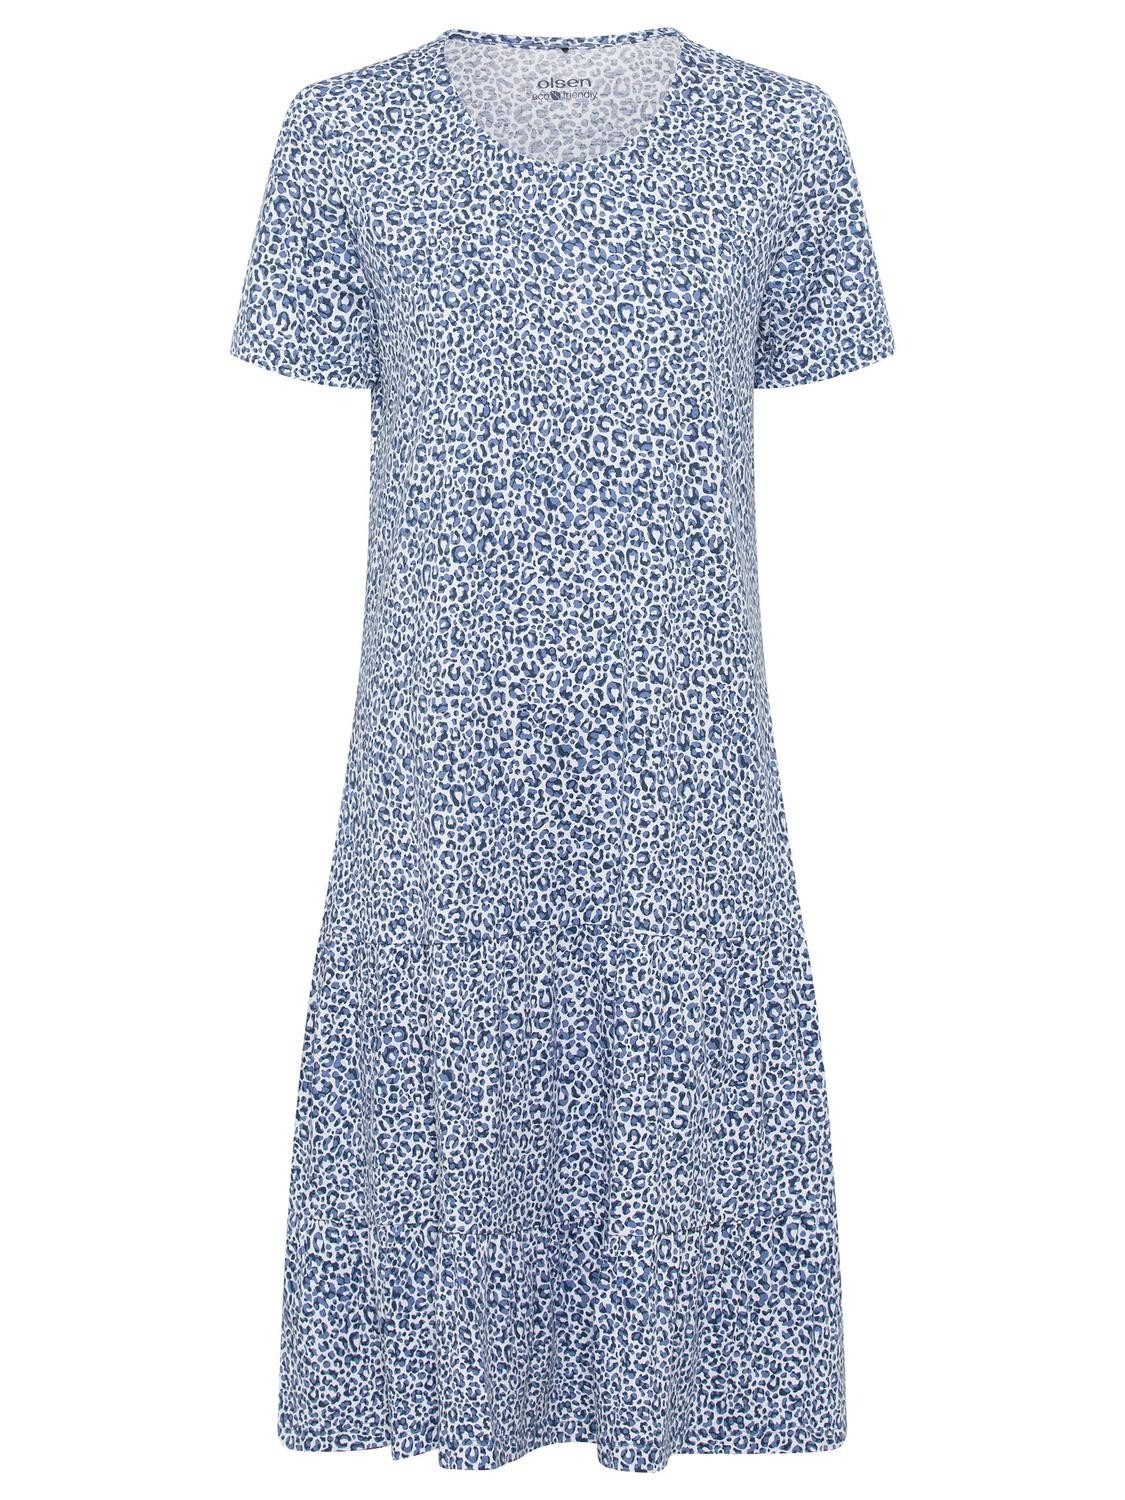 Olsen Sommerkleid Dress Jersey Short (till 105cm)